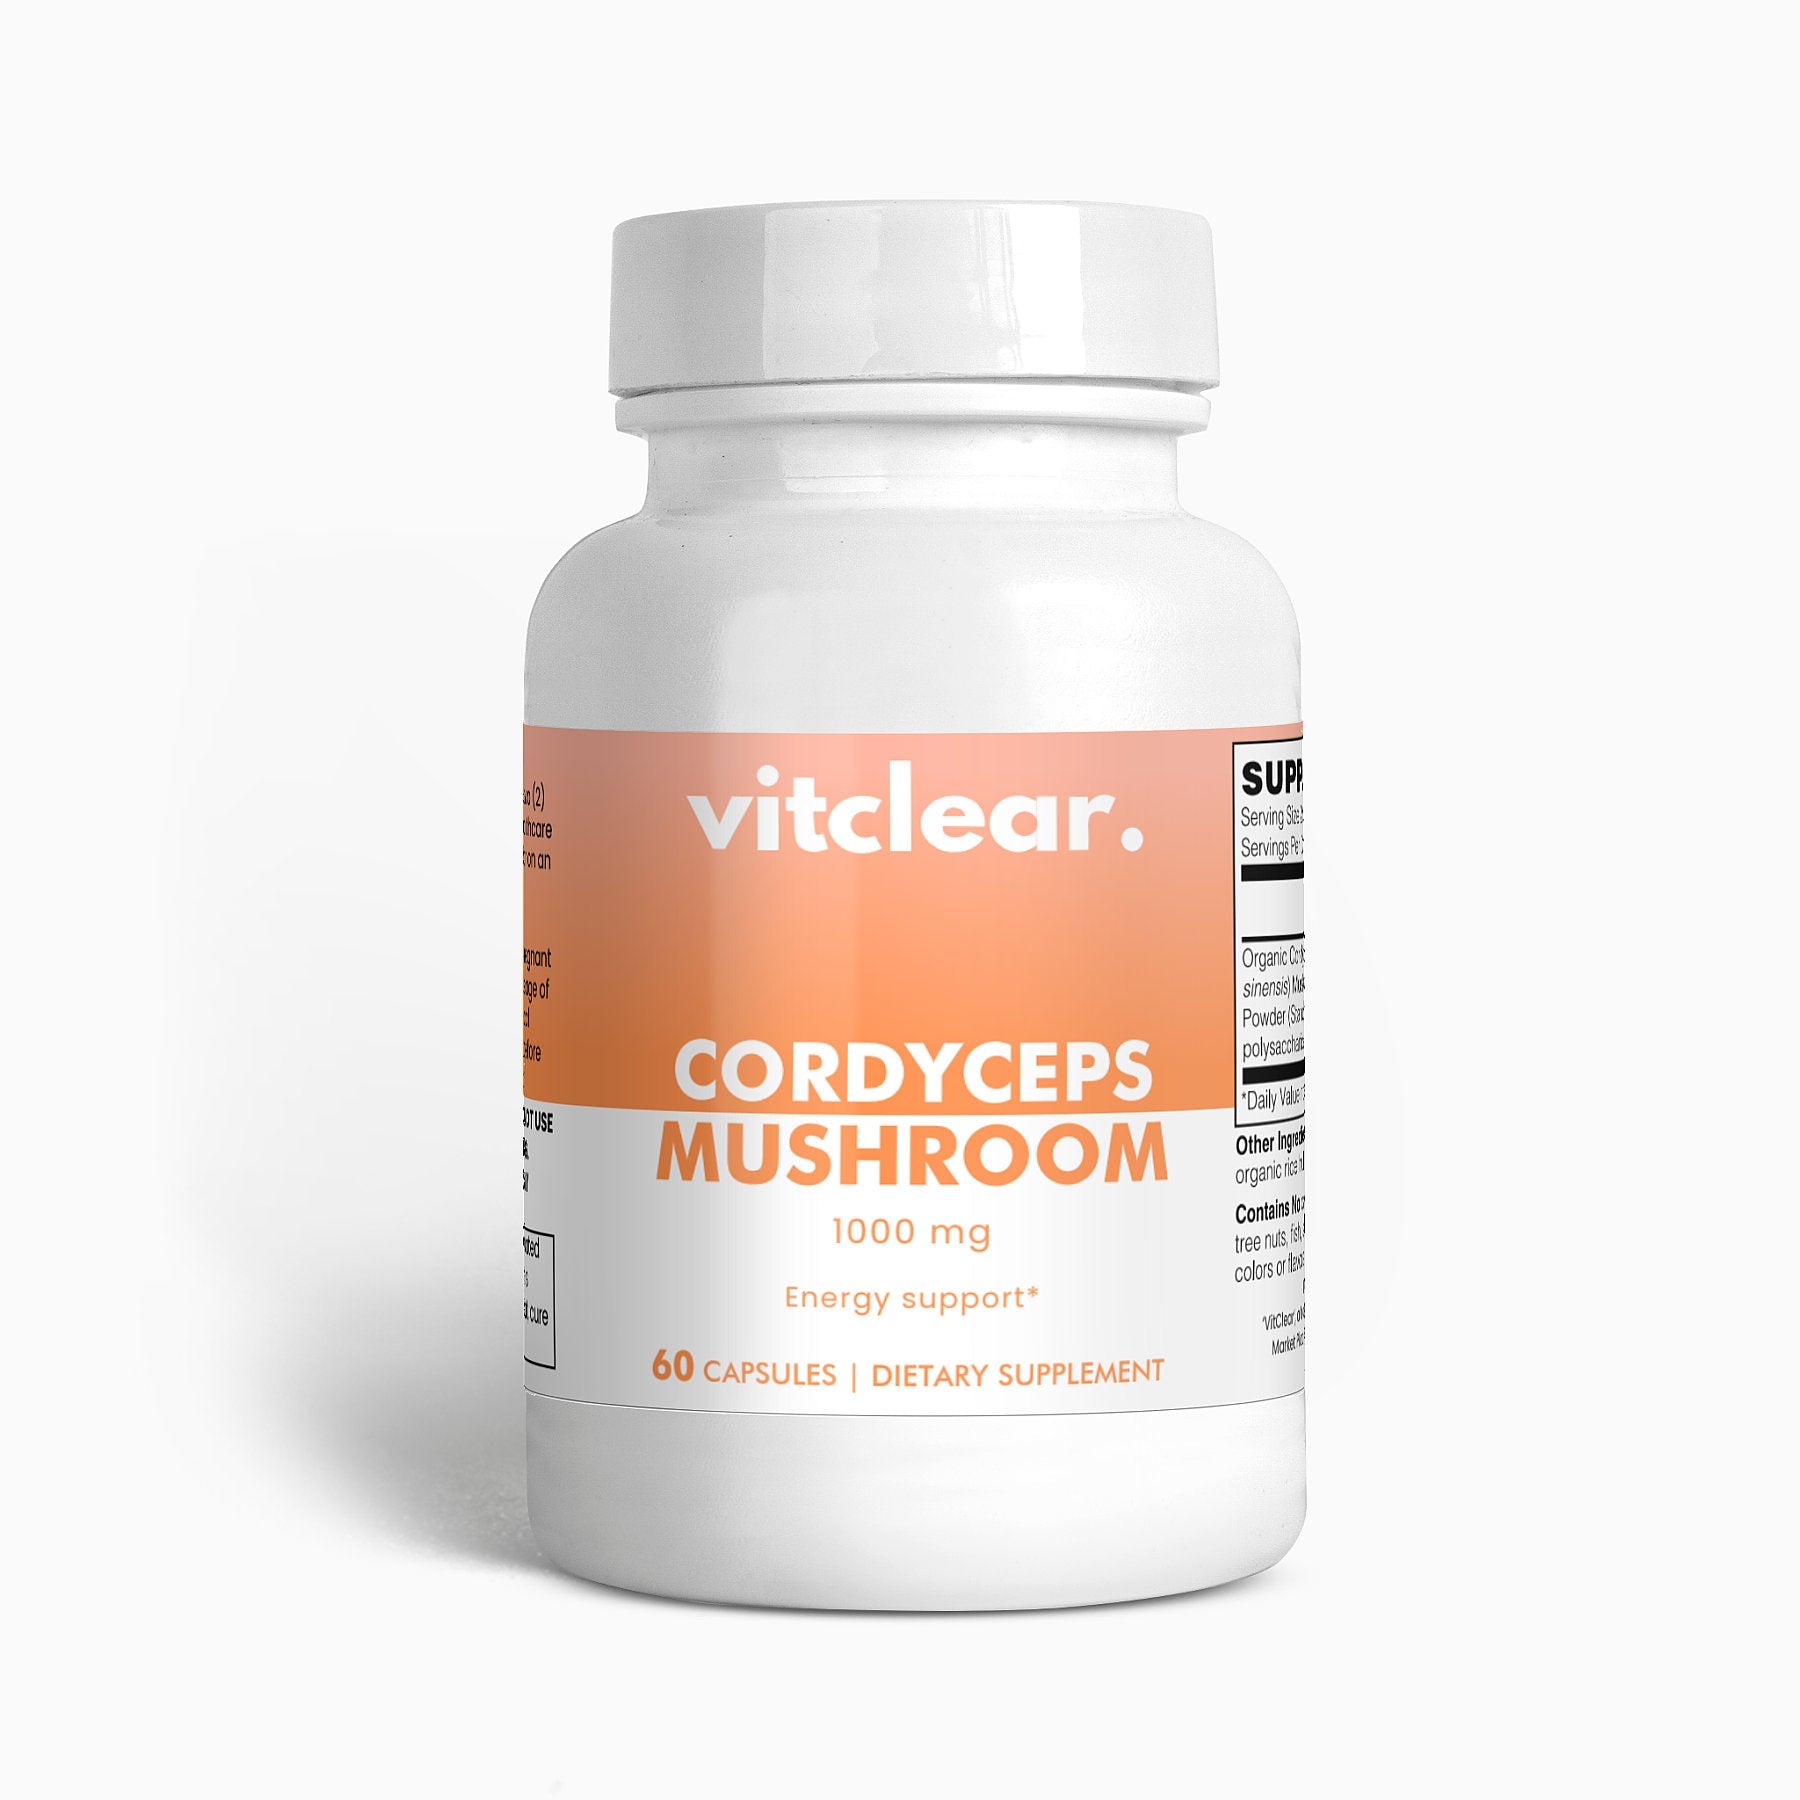 Cordyceps Mushroom - Vitclear.